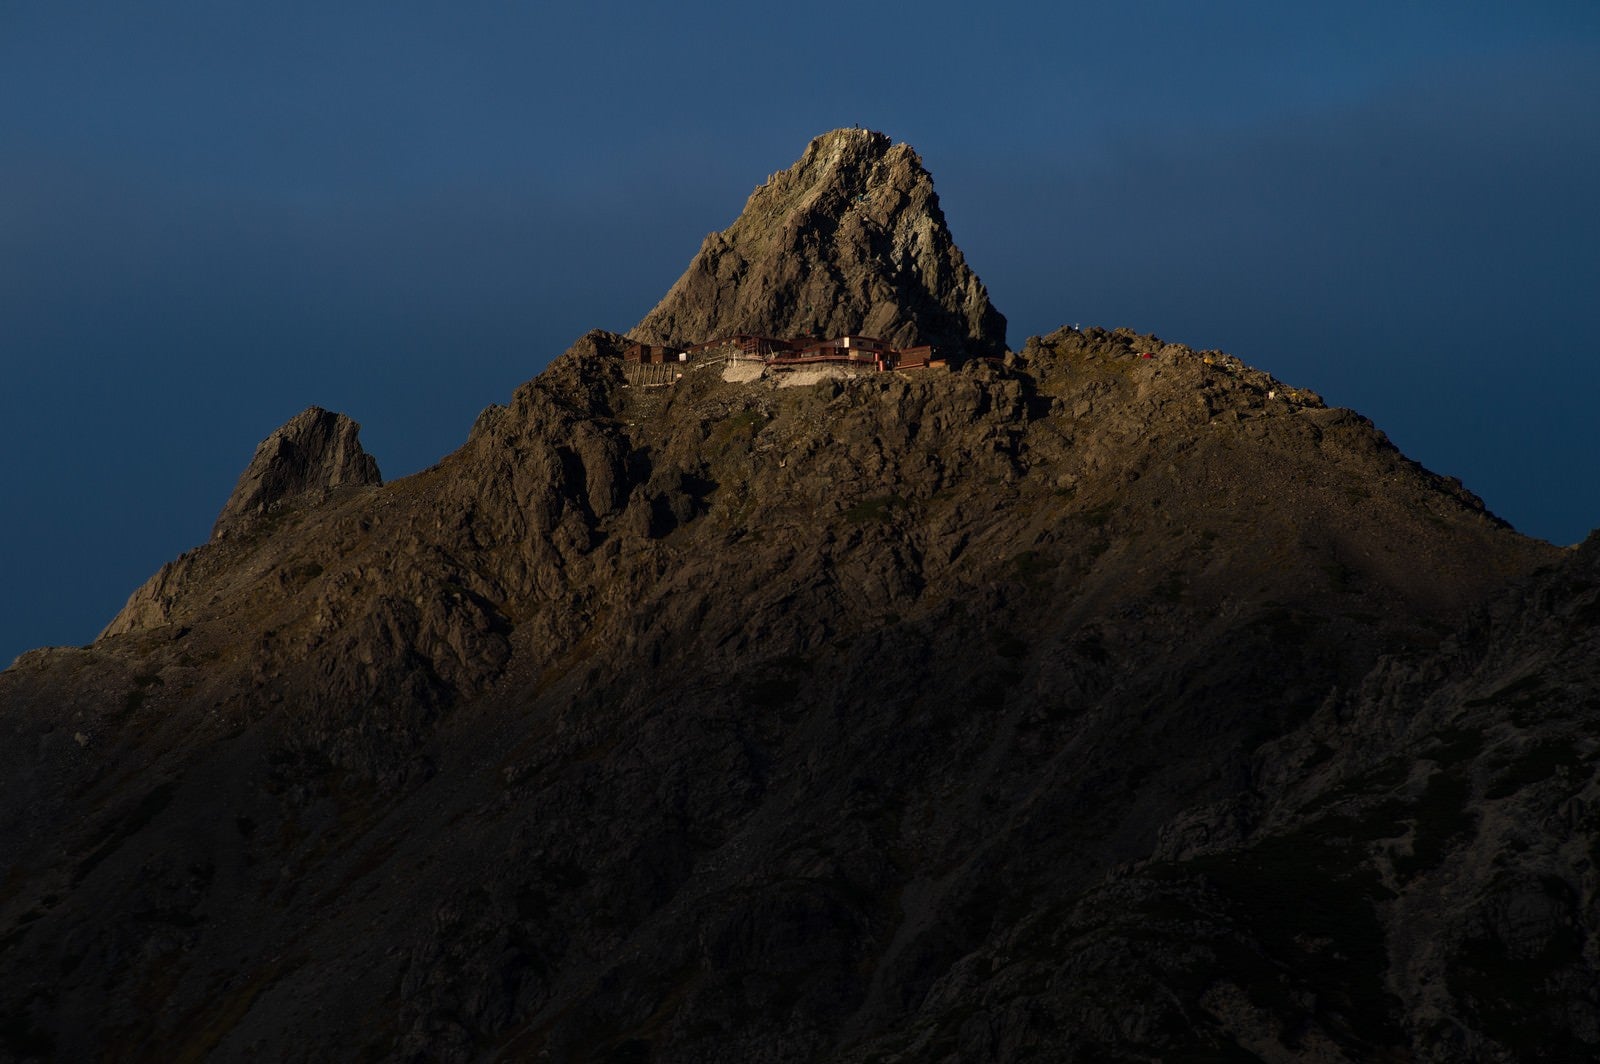 「標高3000mにある北アルプスの槍ヶ岳山荘」の写真